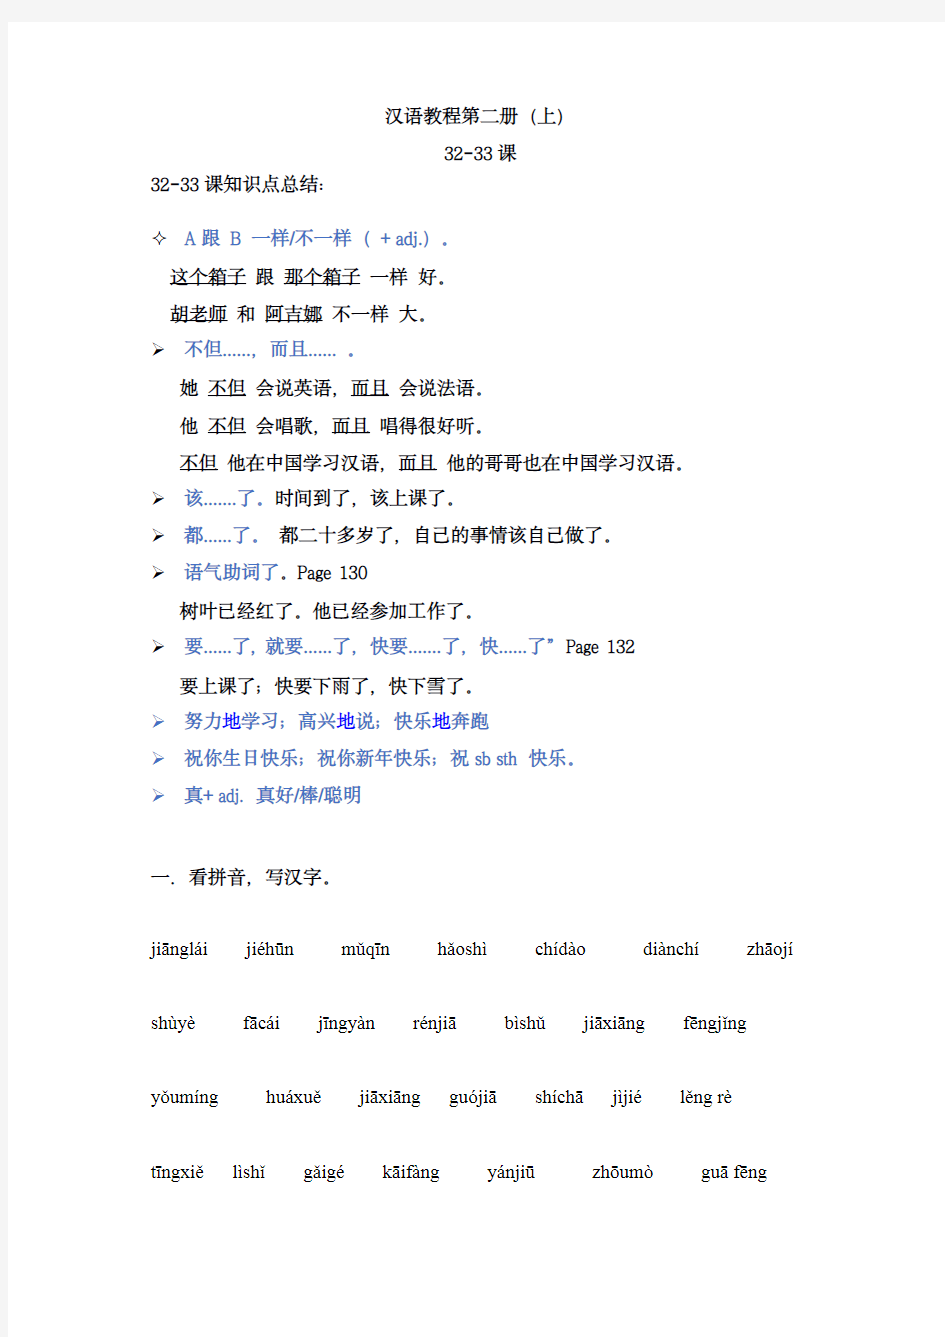 《汉语教程》第二册(上)第7-8课练习题